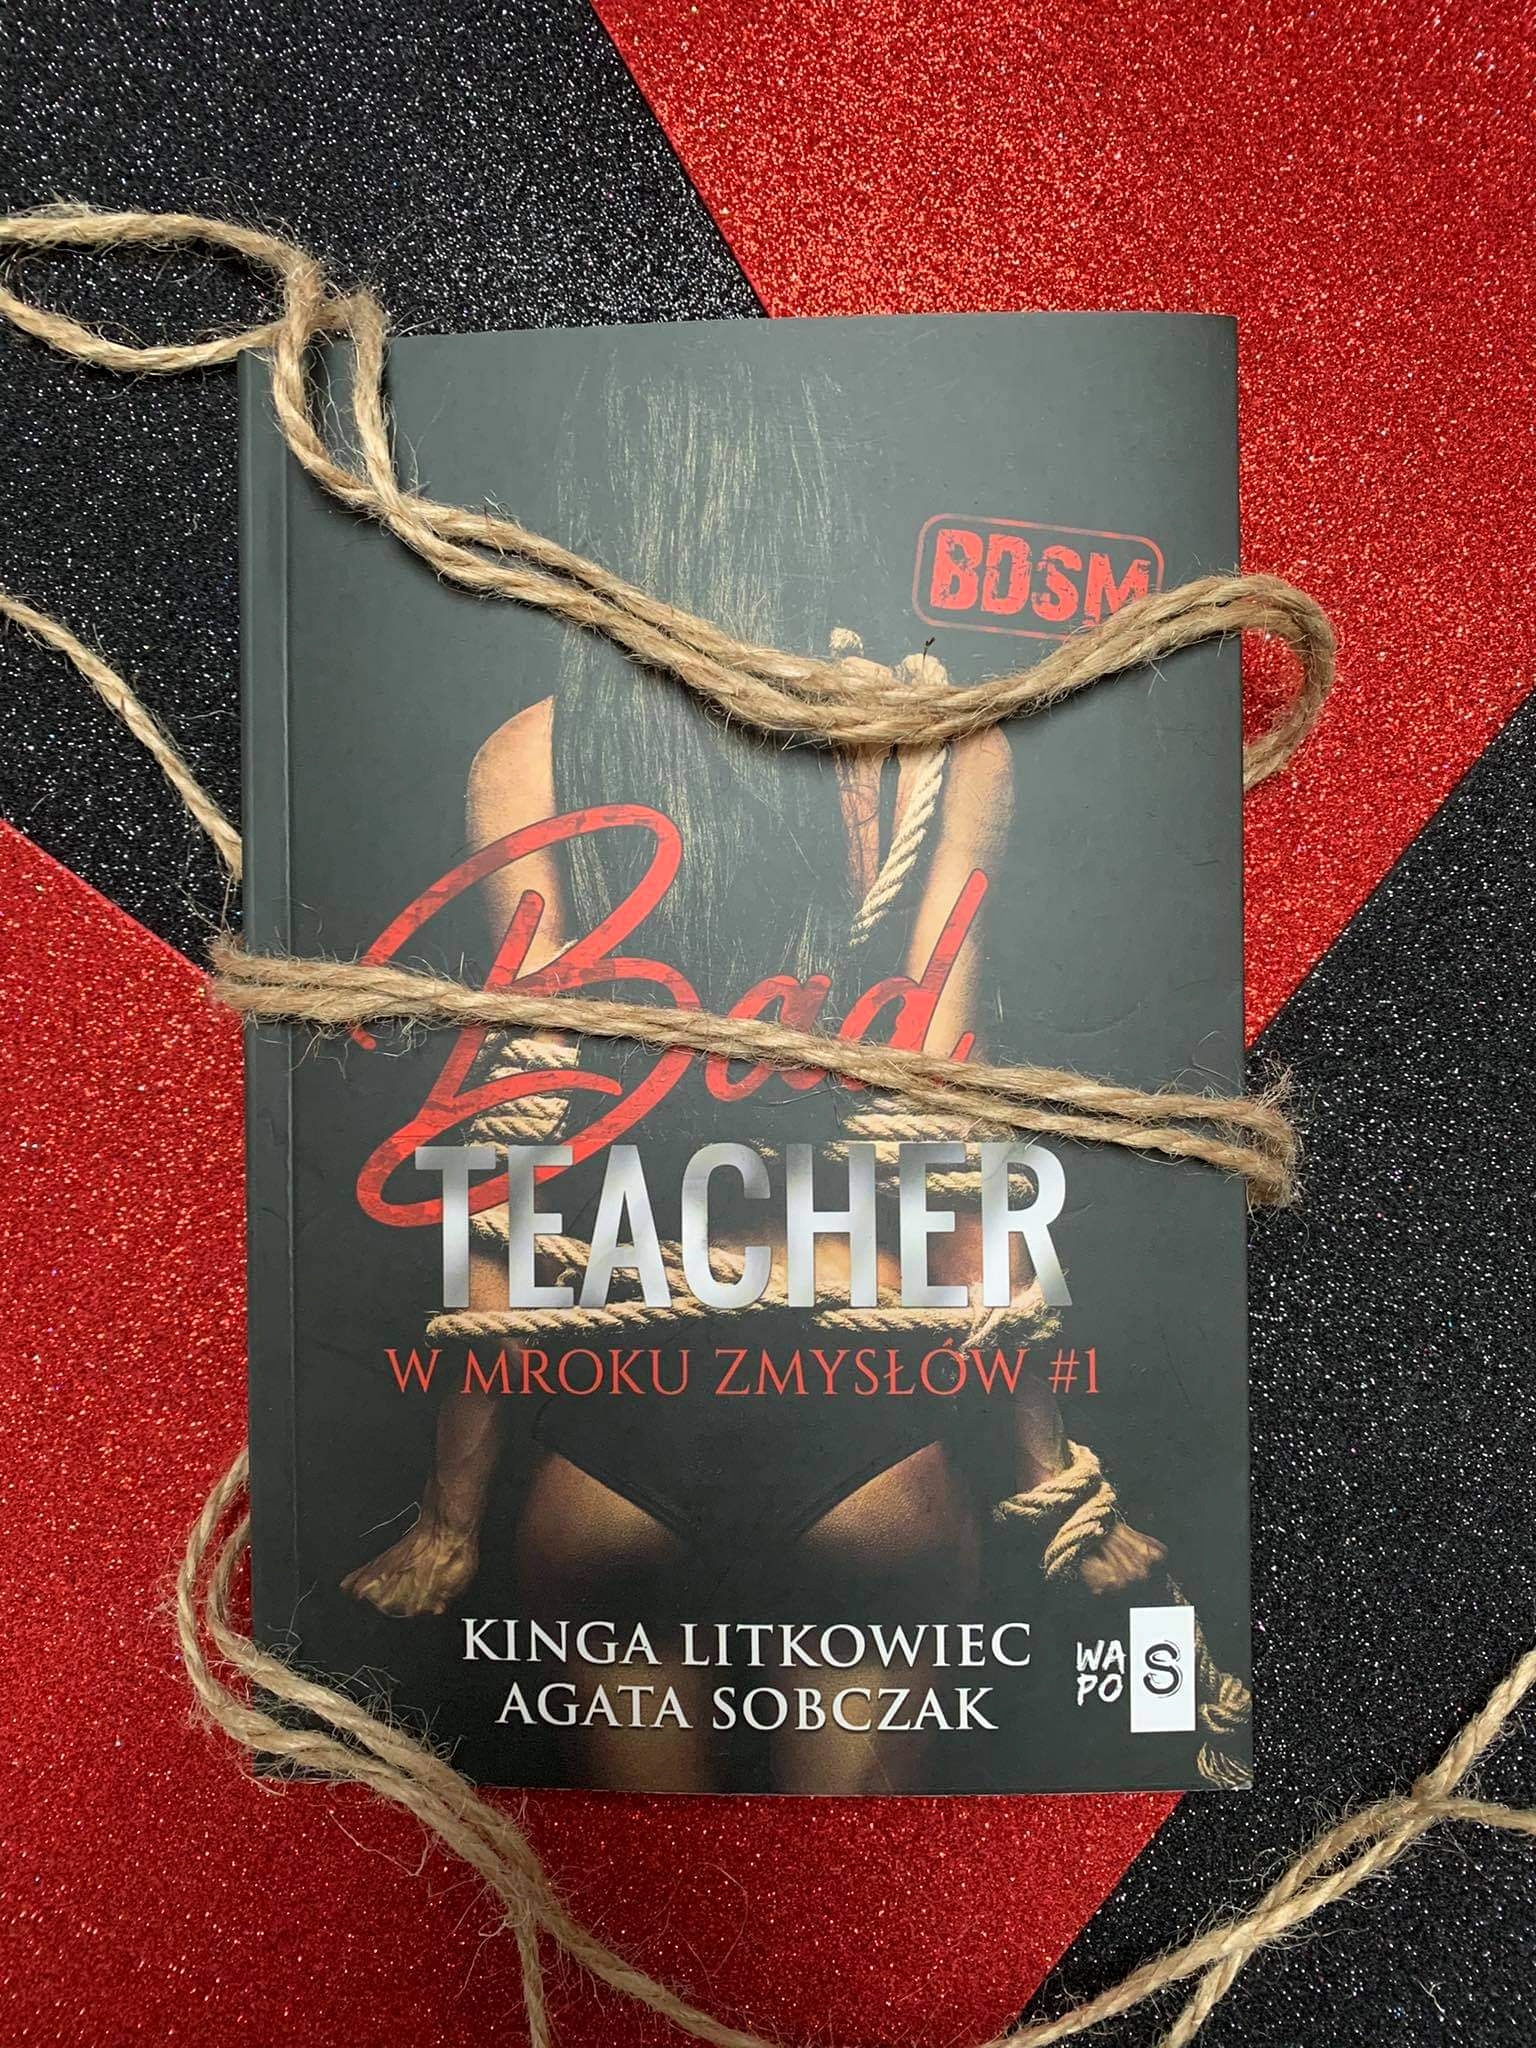 "Bad Teacher" Kinga Litkowiec, Agata Sobczak